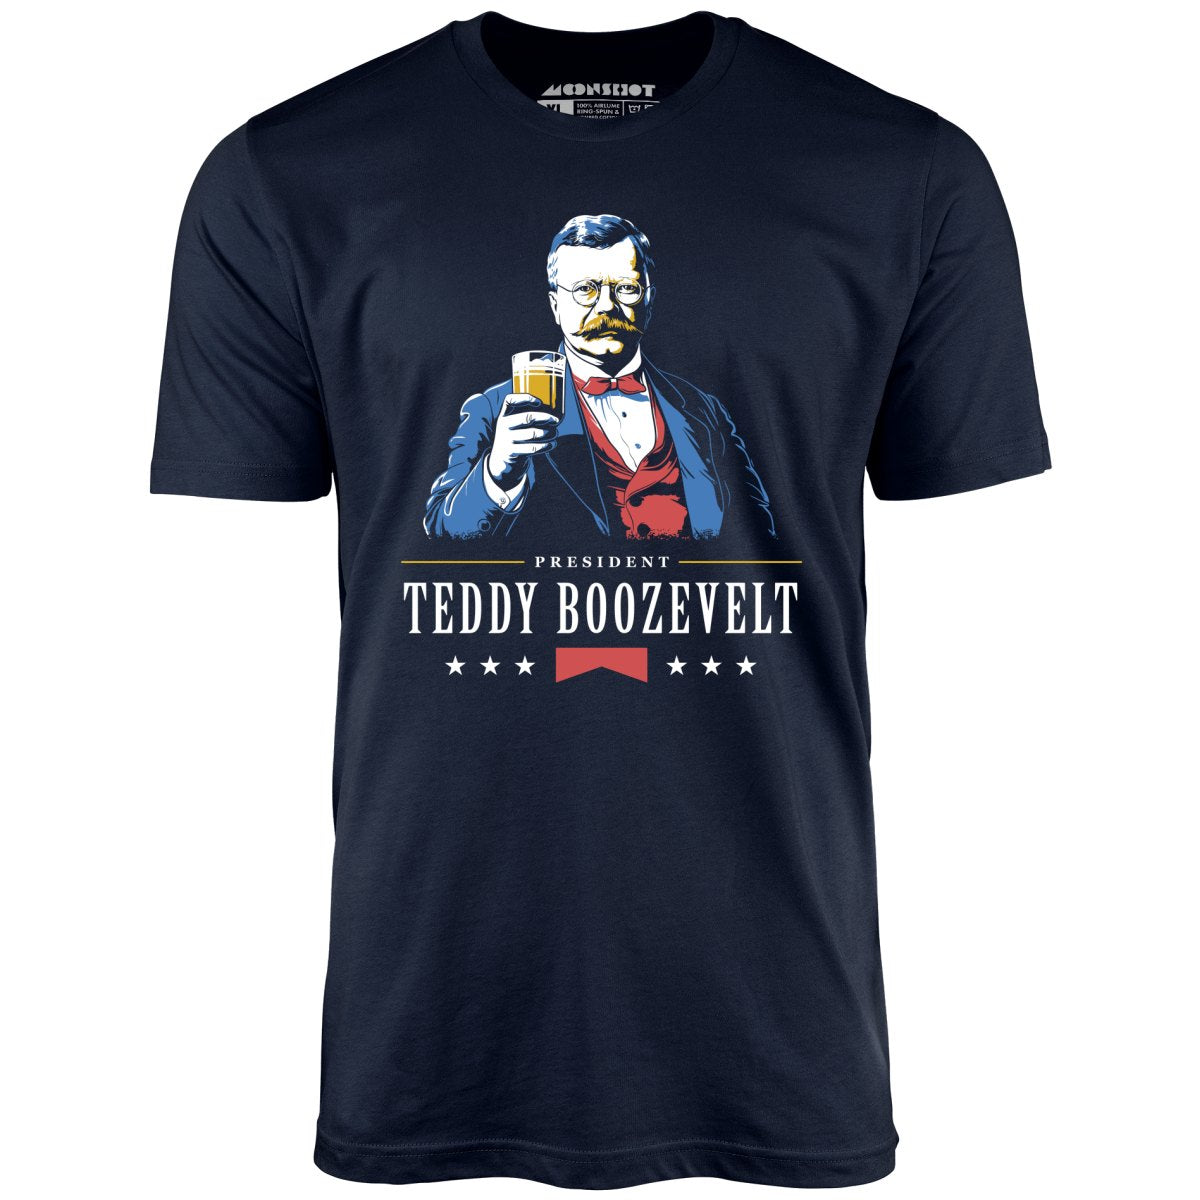 President Teddy Boozevelt - Unisex T-Shirt